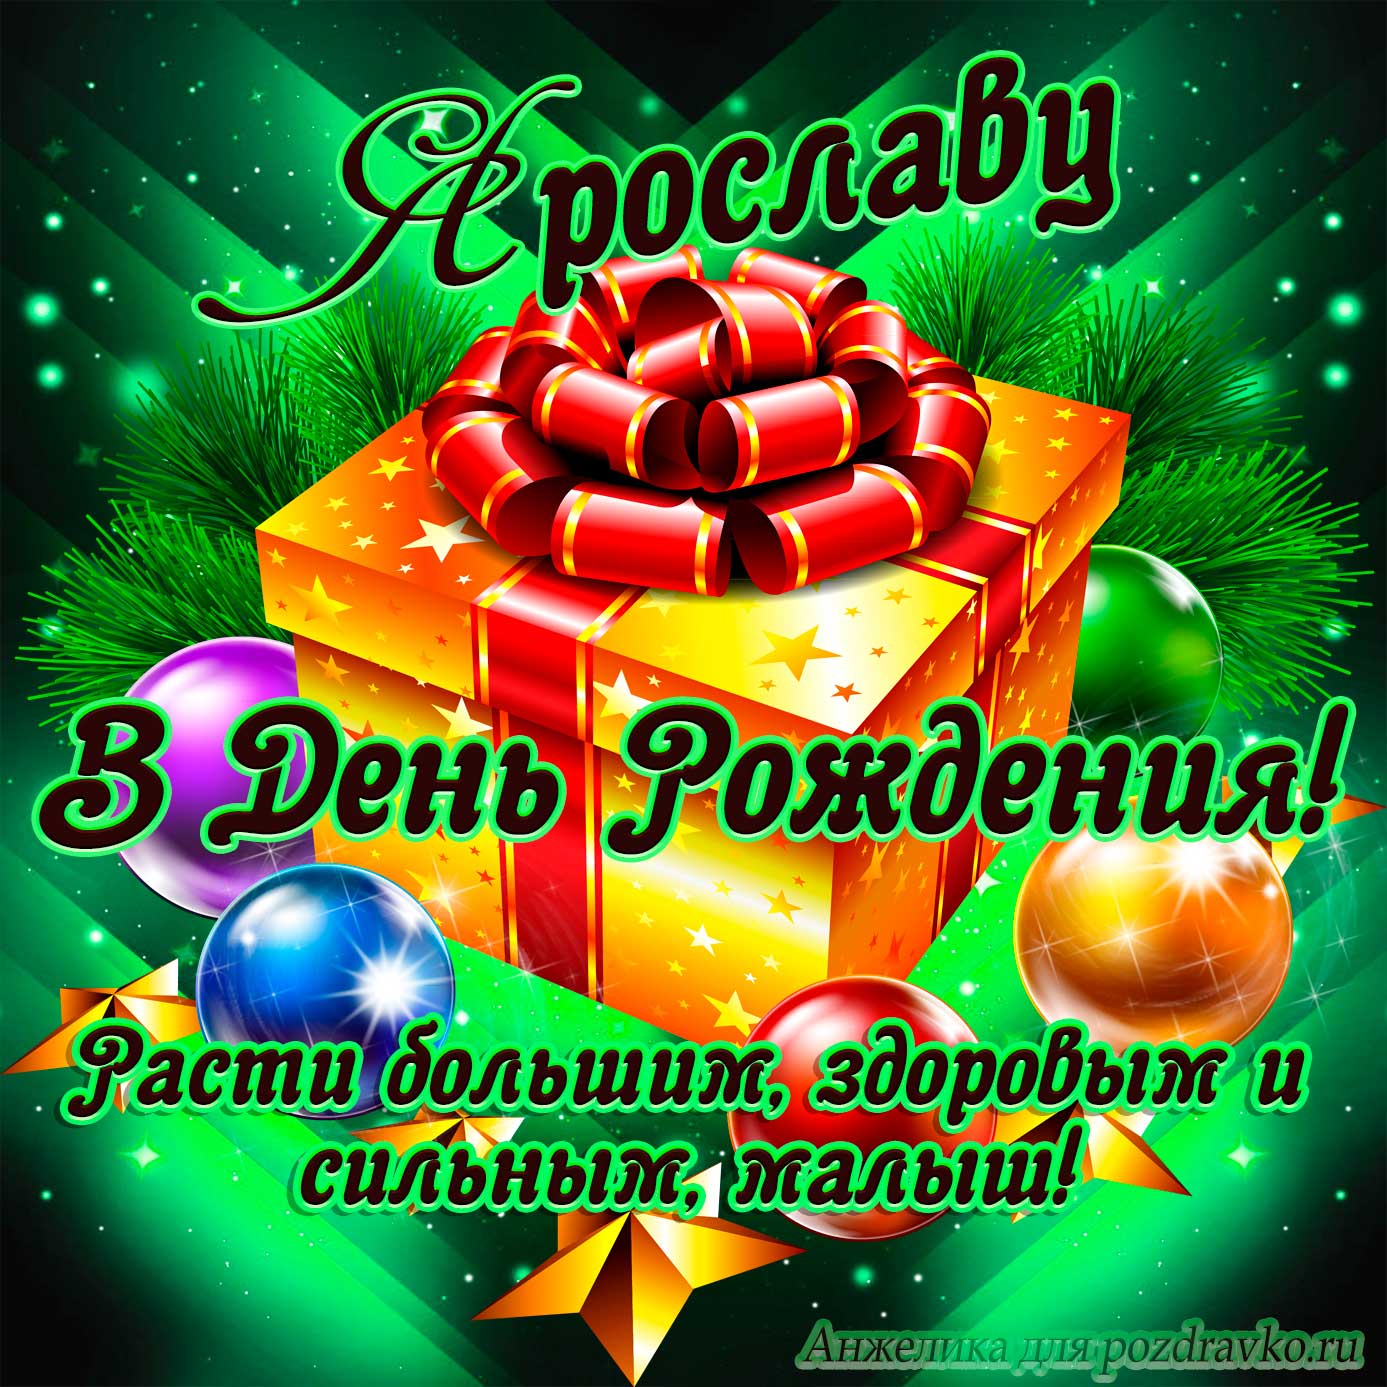 Открытка - Ярославу в День Рождения, расти большим здоровым и сильным. Скачать бесплатно или отправить картинку.